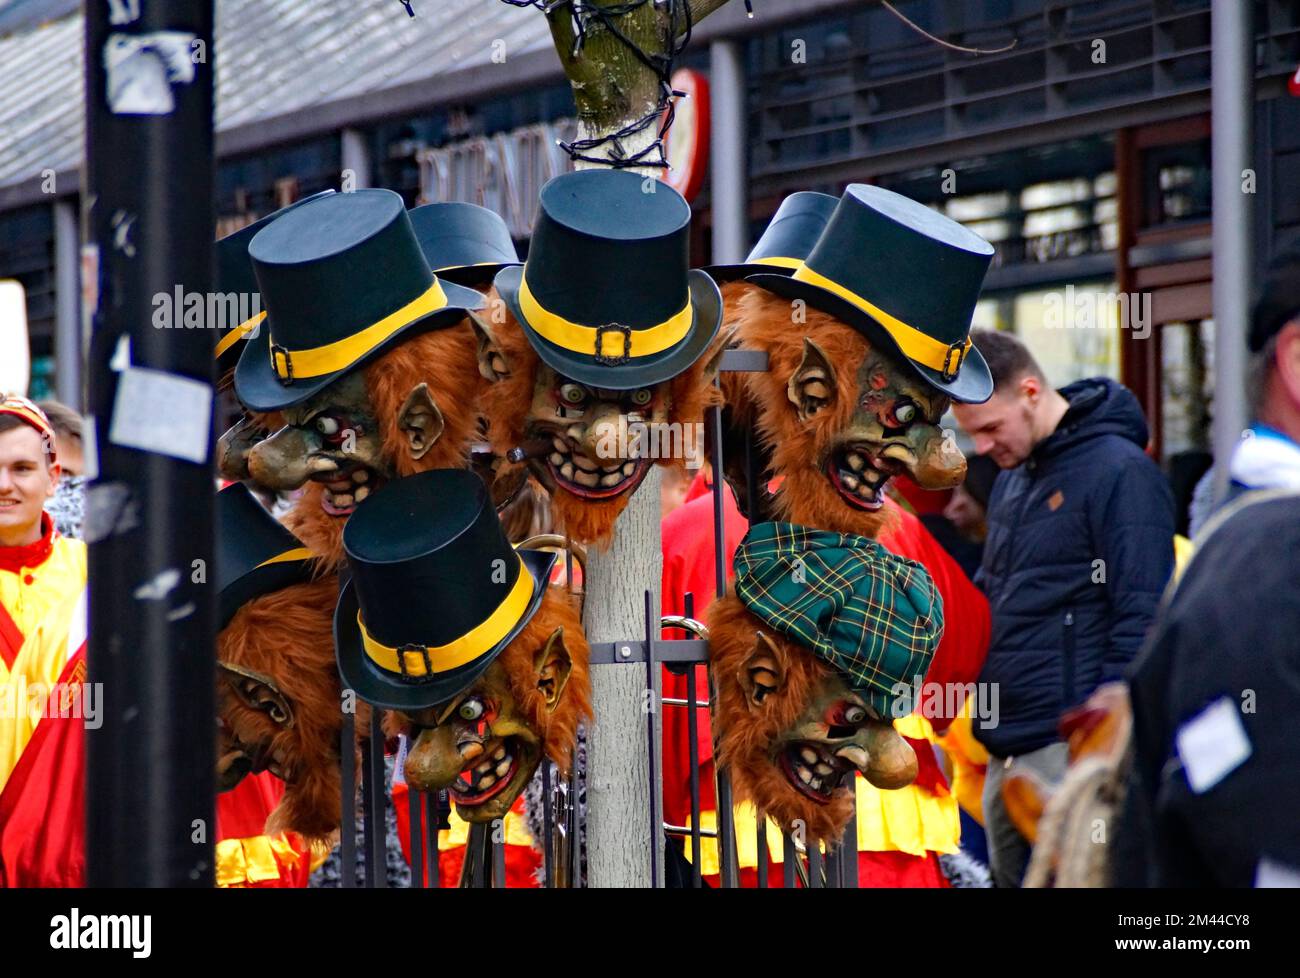 Gente vestida con ropa divertida y máscaras celebrando el tradicional carnaval alemán Shrovetide llamado Fasching o Narrensprung (Ulm, Alemania) Foto de stock